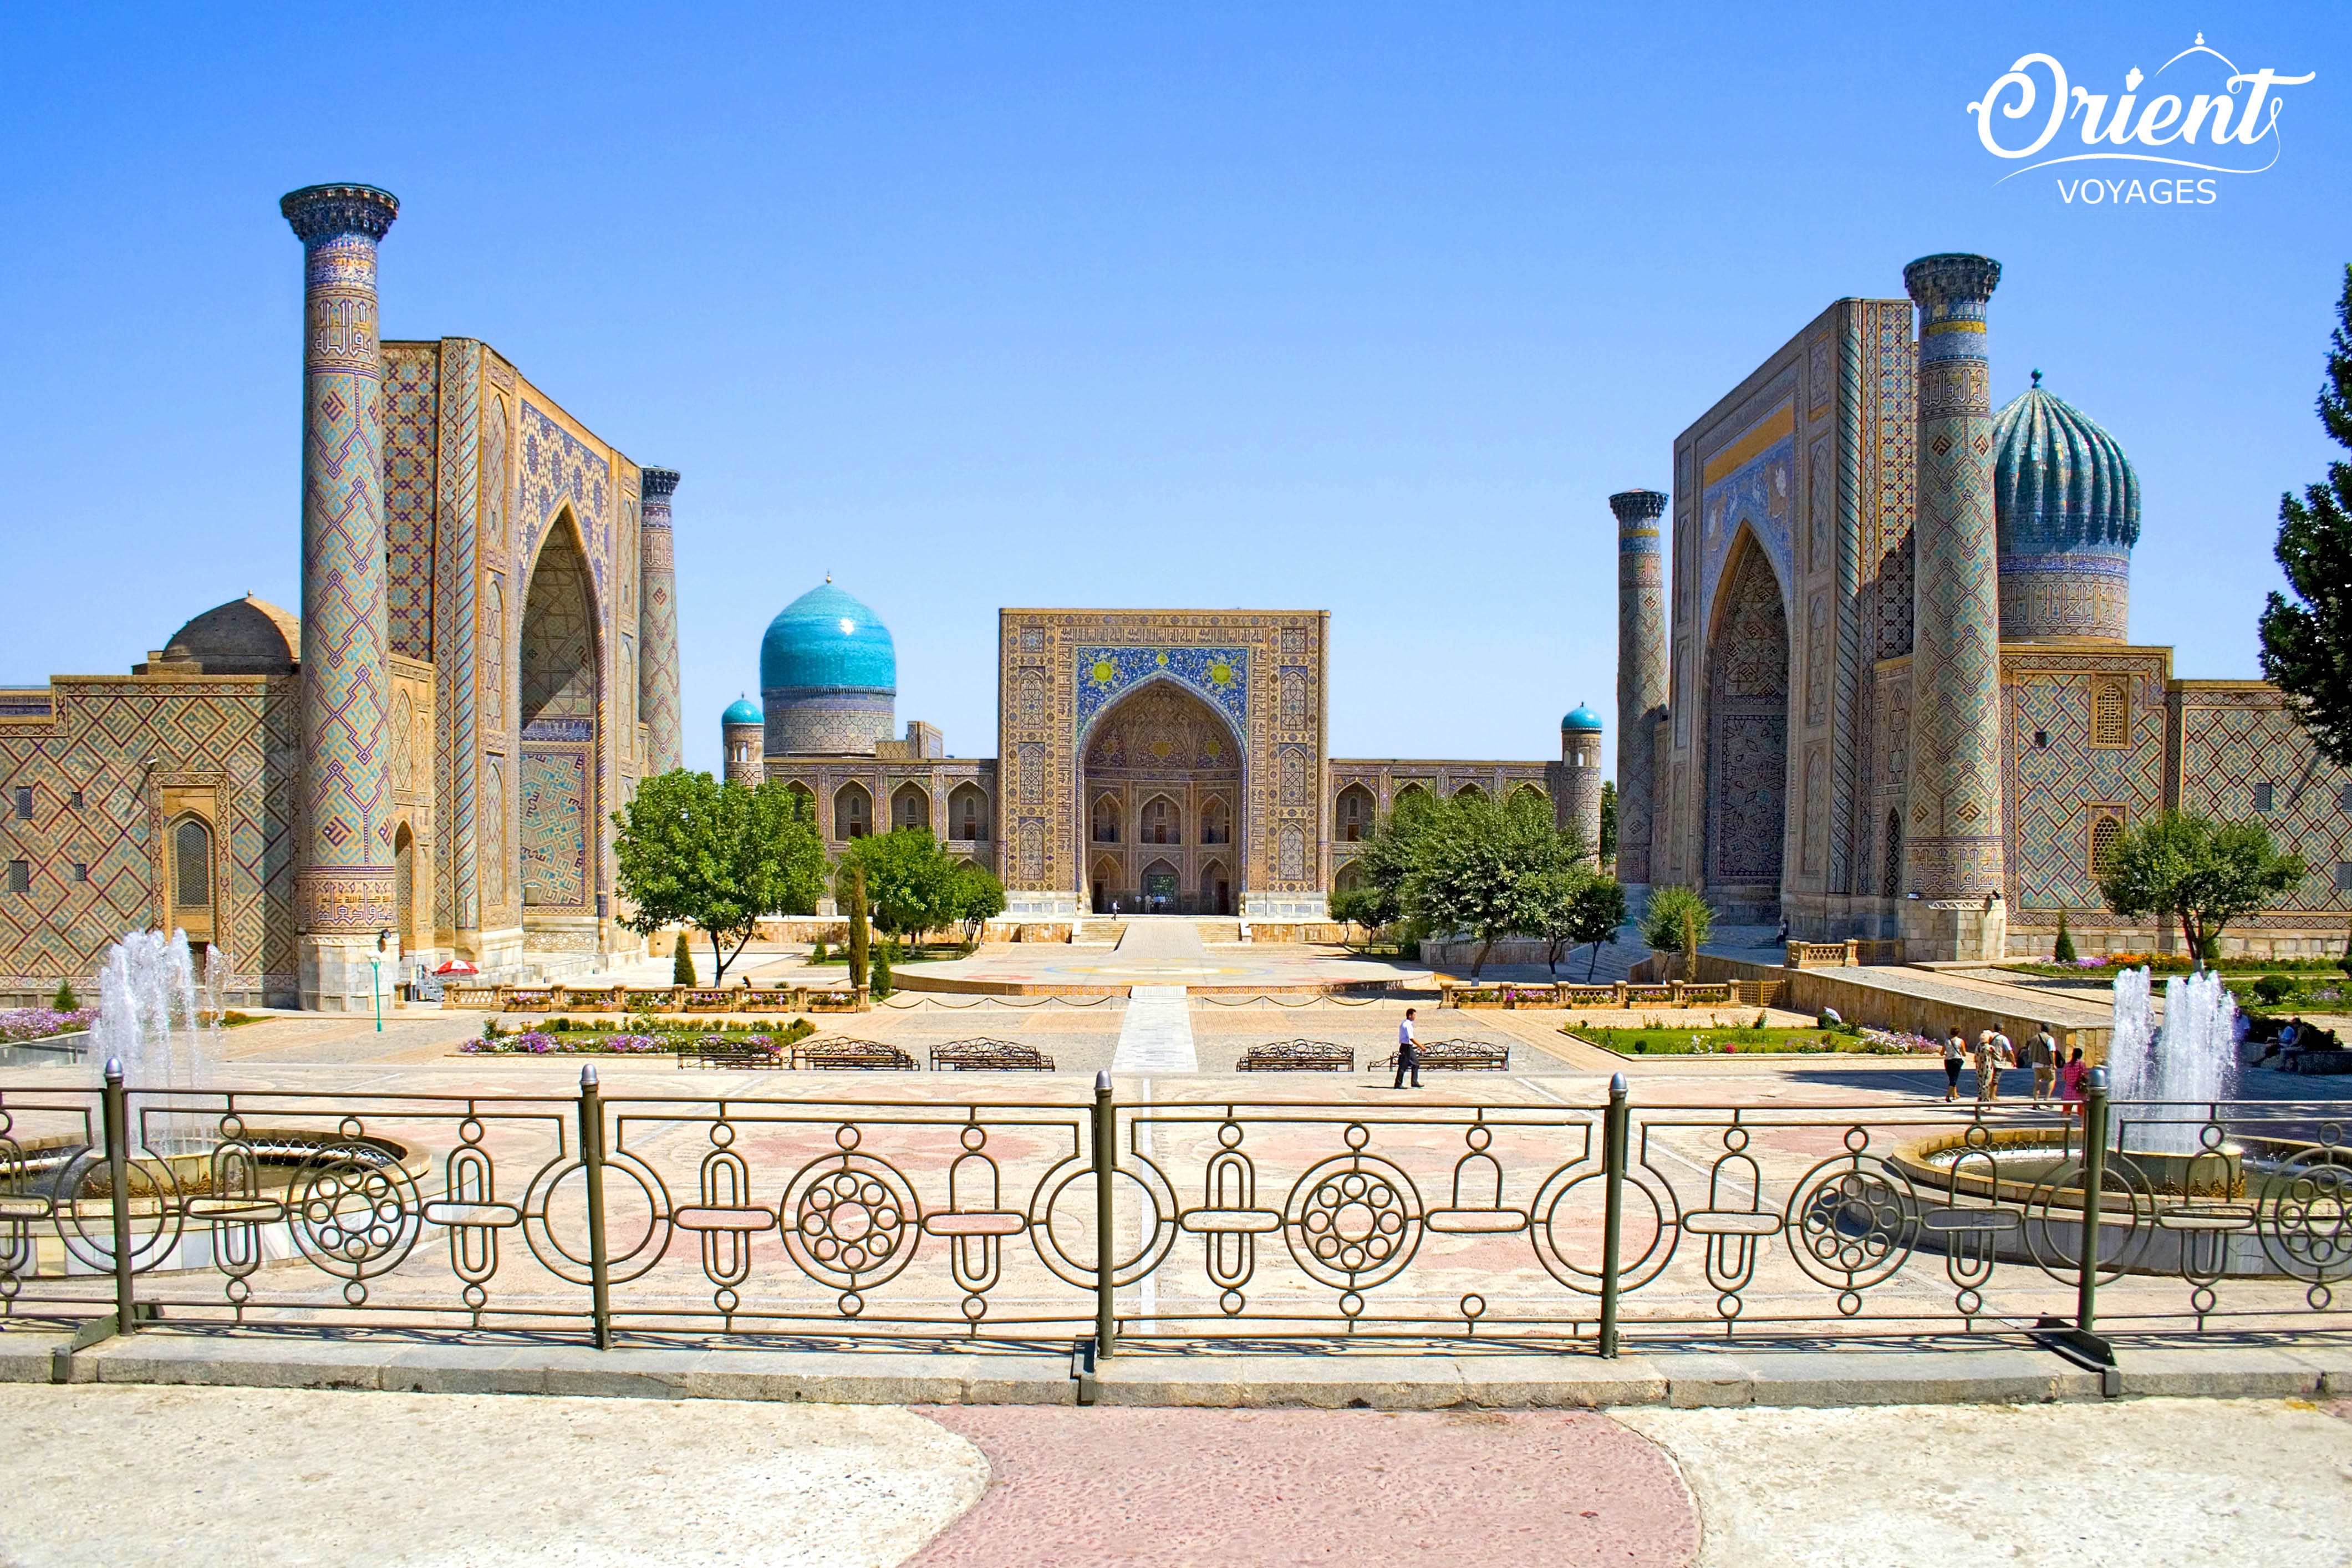 Registan square, Samarkand